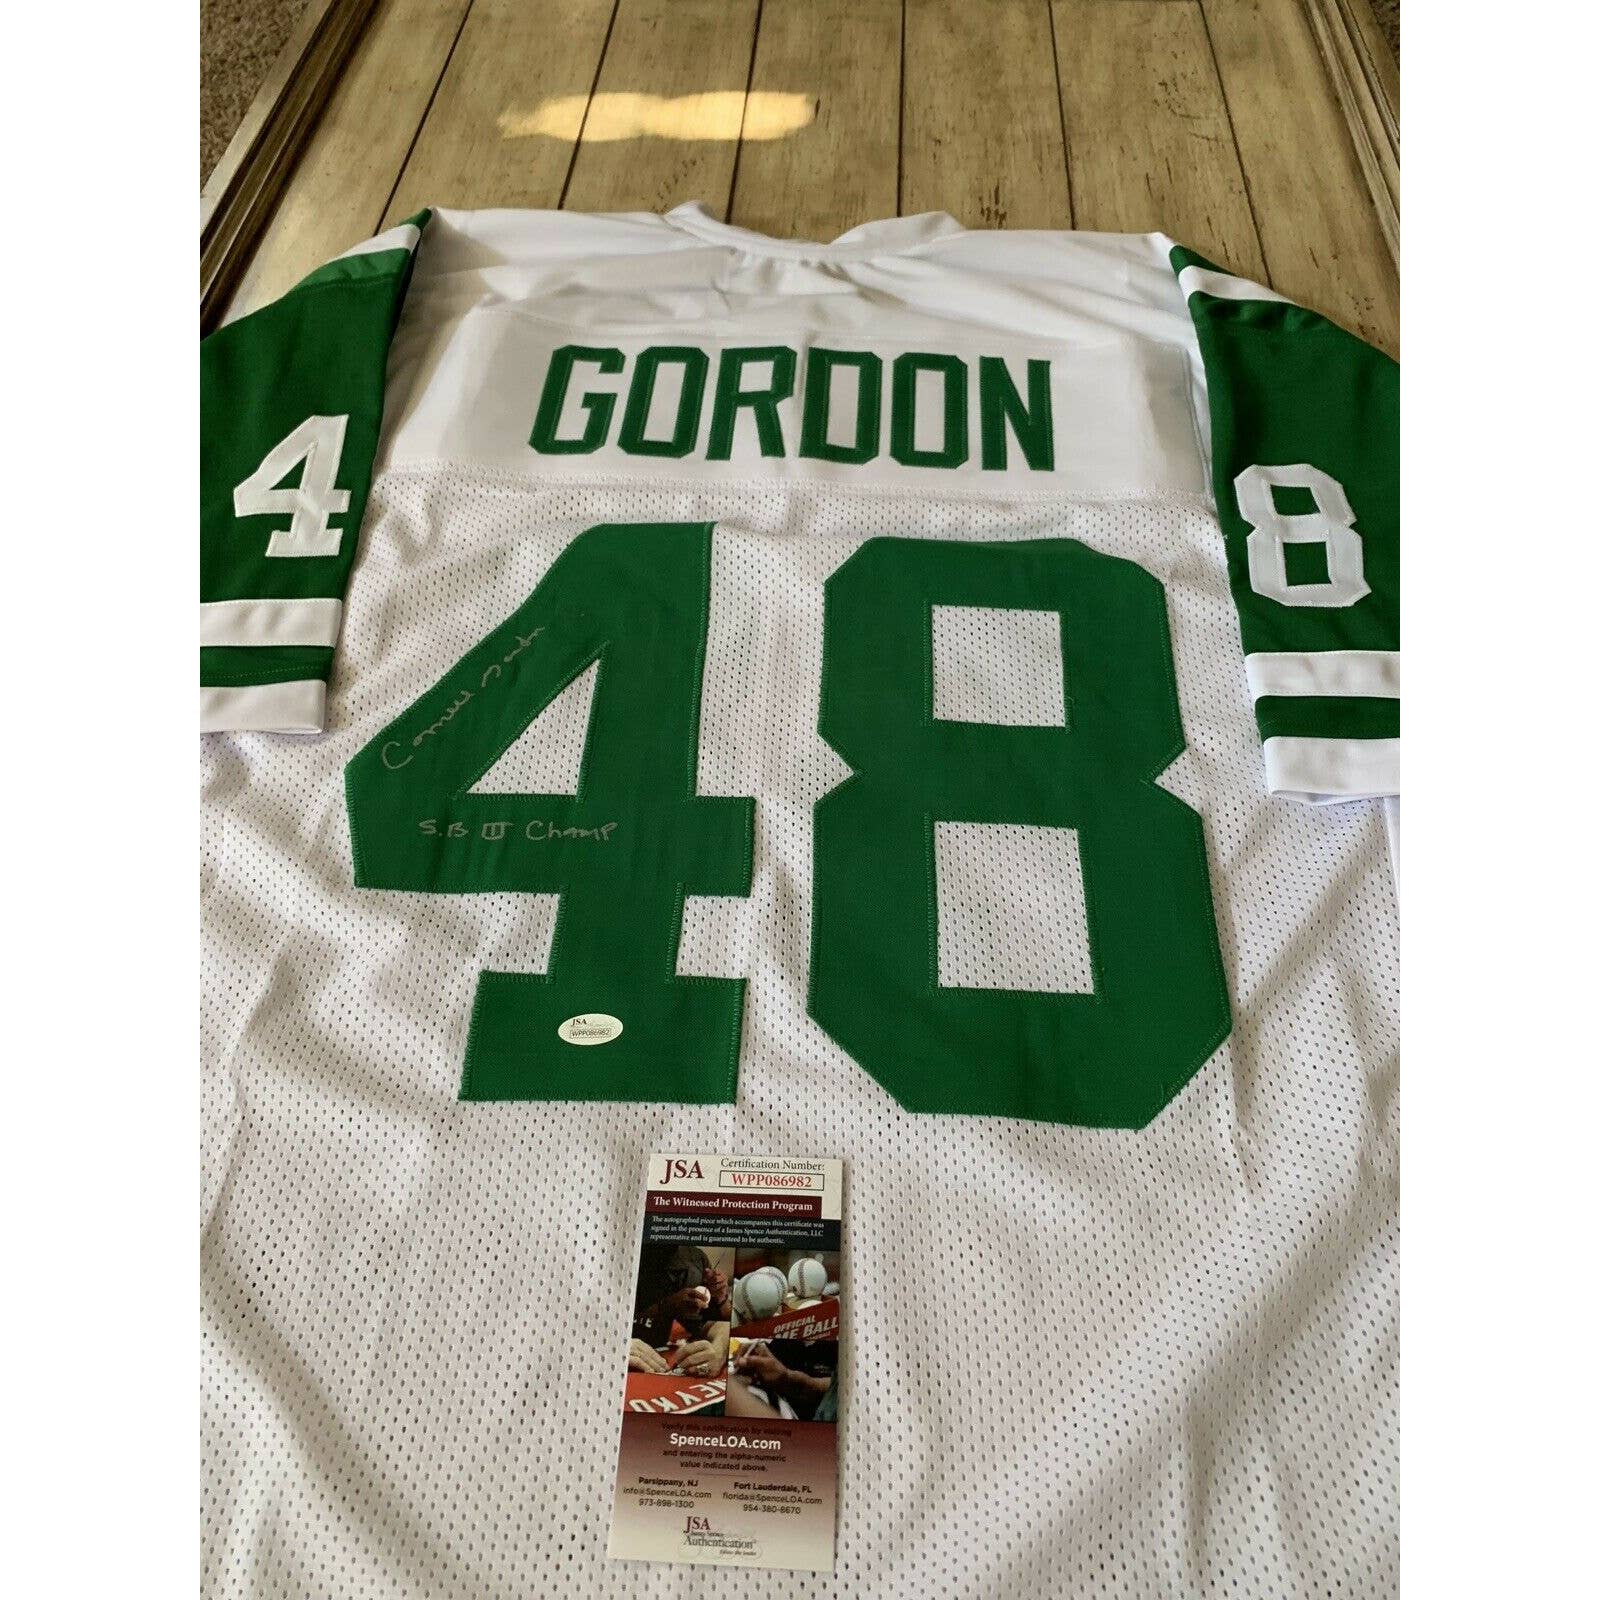 Cornell Gordon Autographed/Signed Jersey JSA COA New York Jets NY Auto - TreasuresEvolved